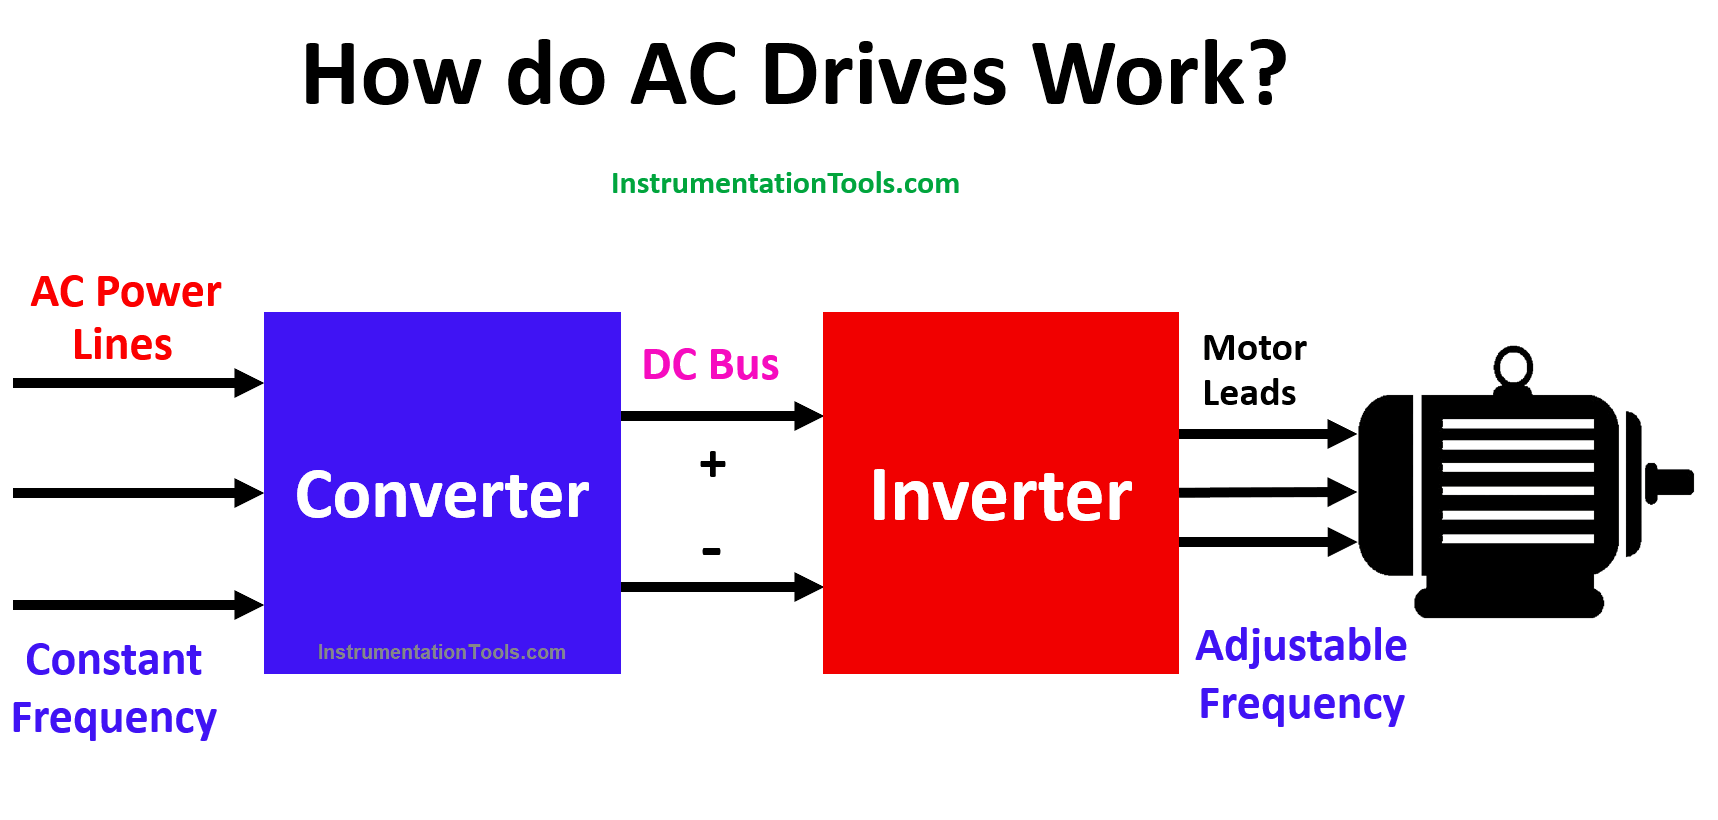 How do AC drives work